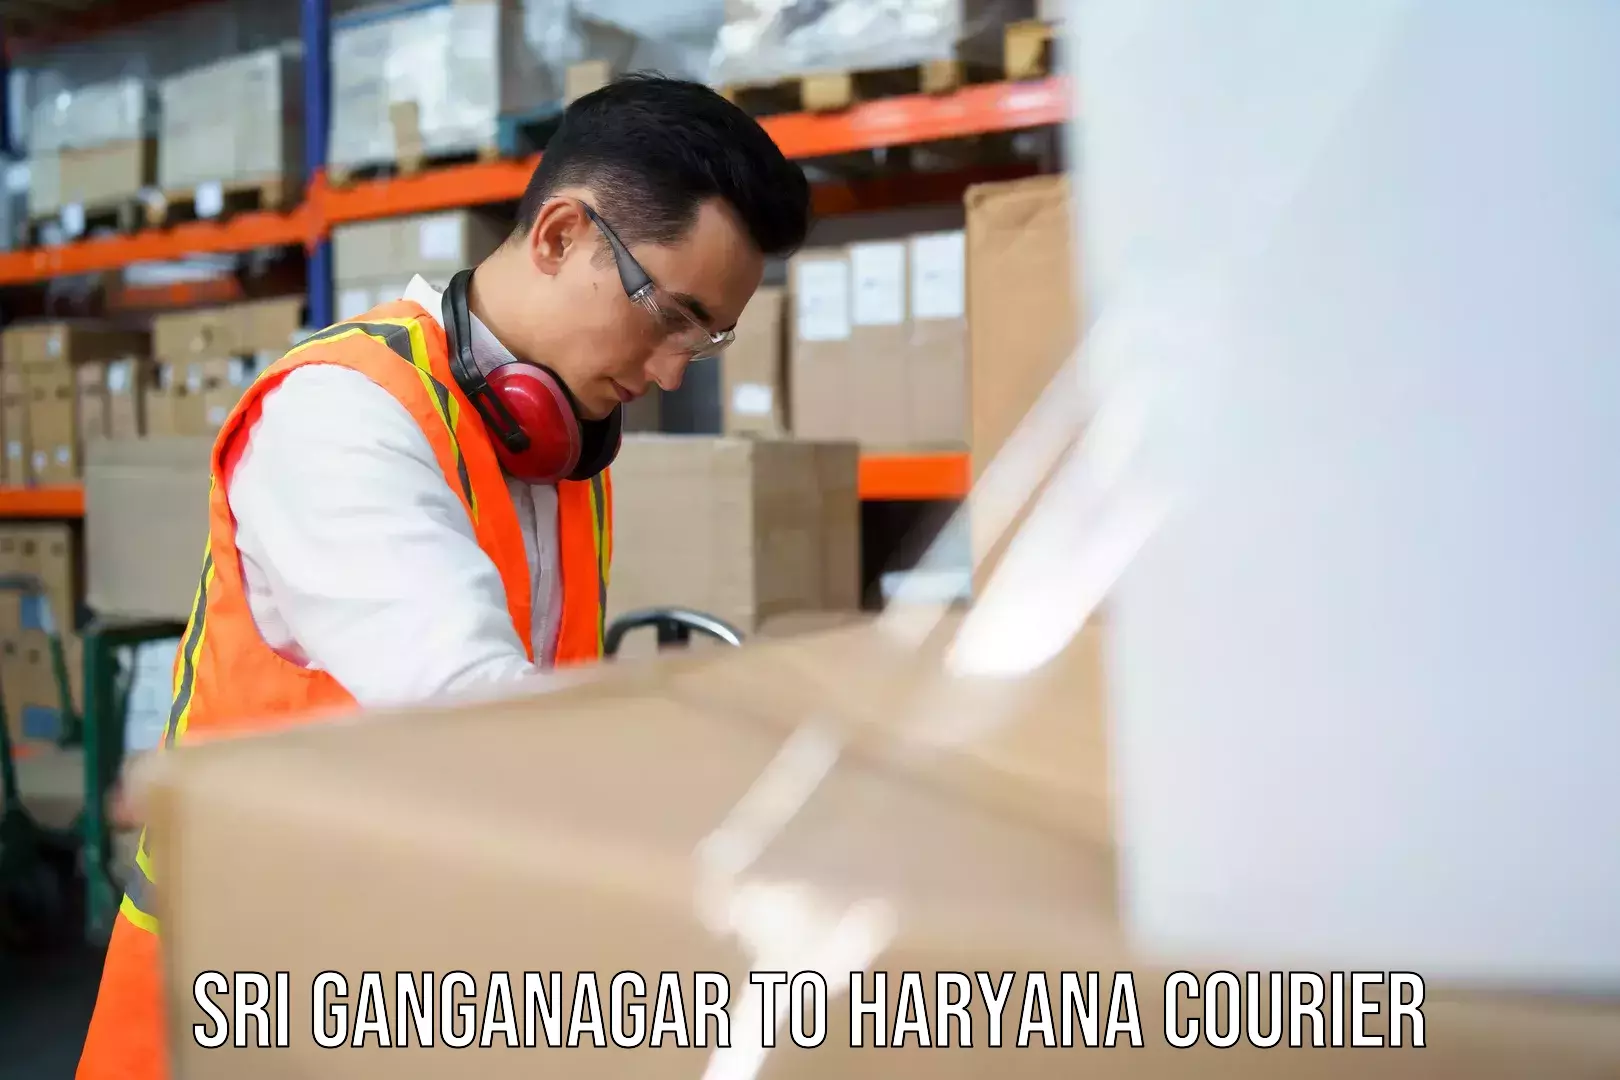 On-call courier service Sri Ganganagar to Yamuna Nagar